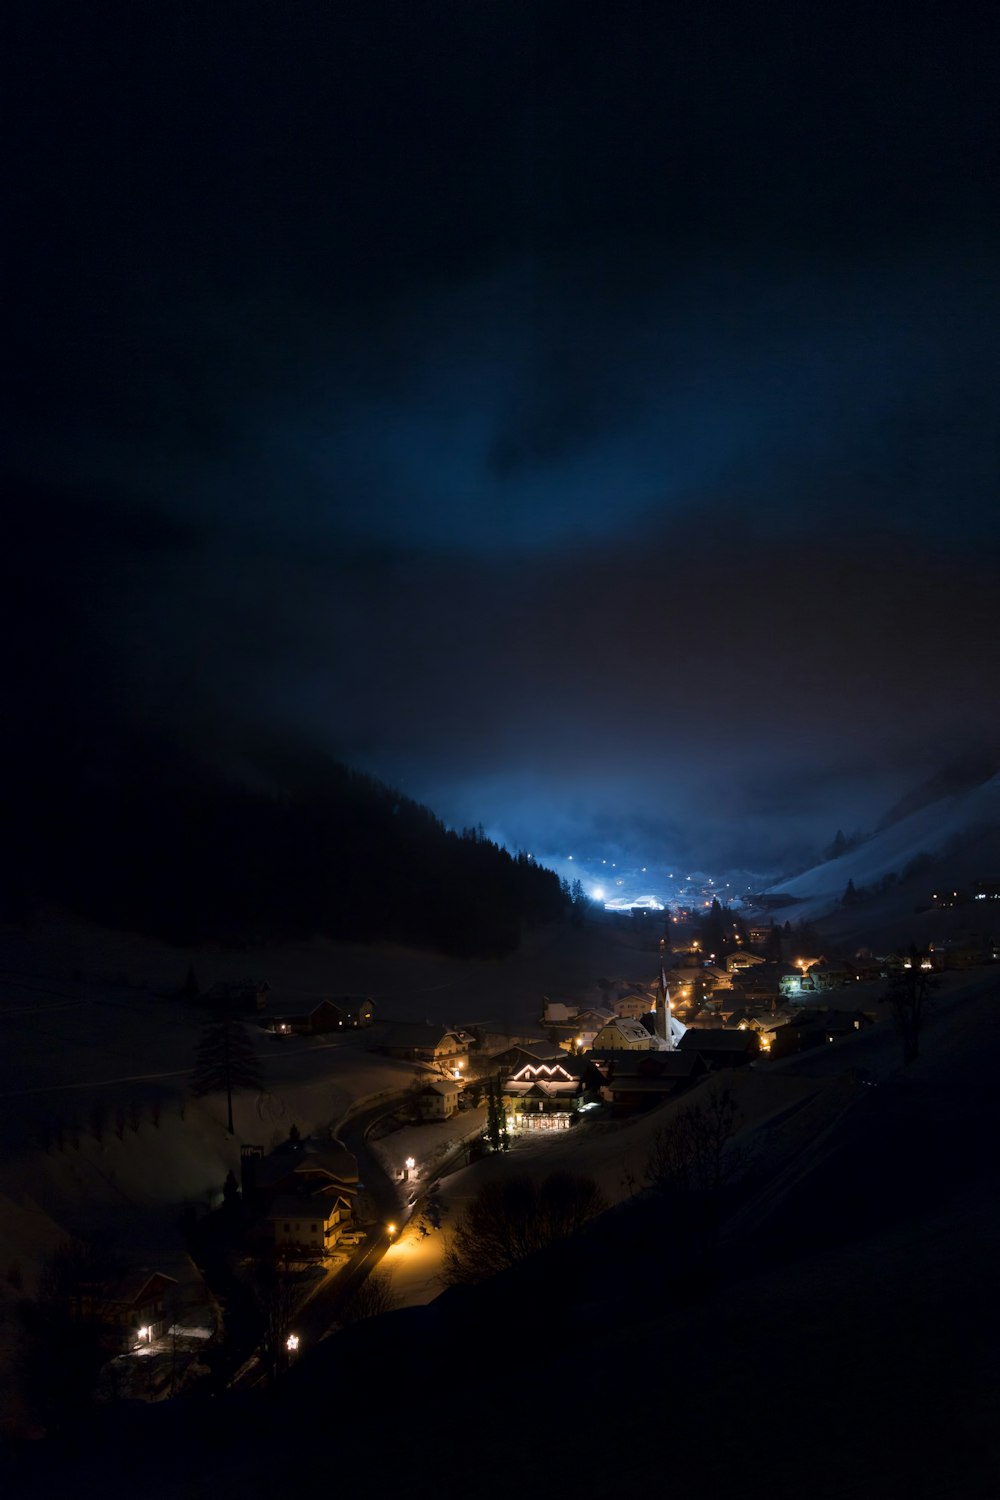 Una vista notturna di una città in montagna